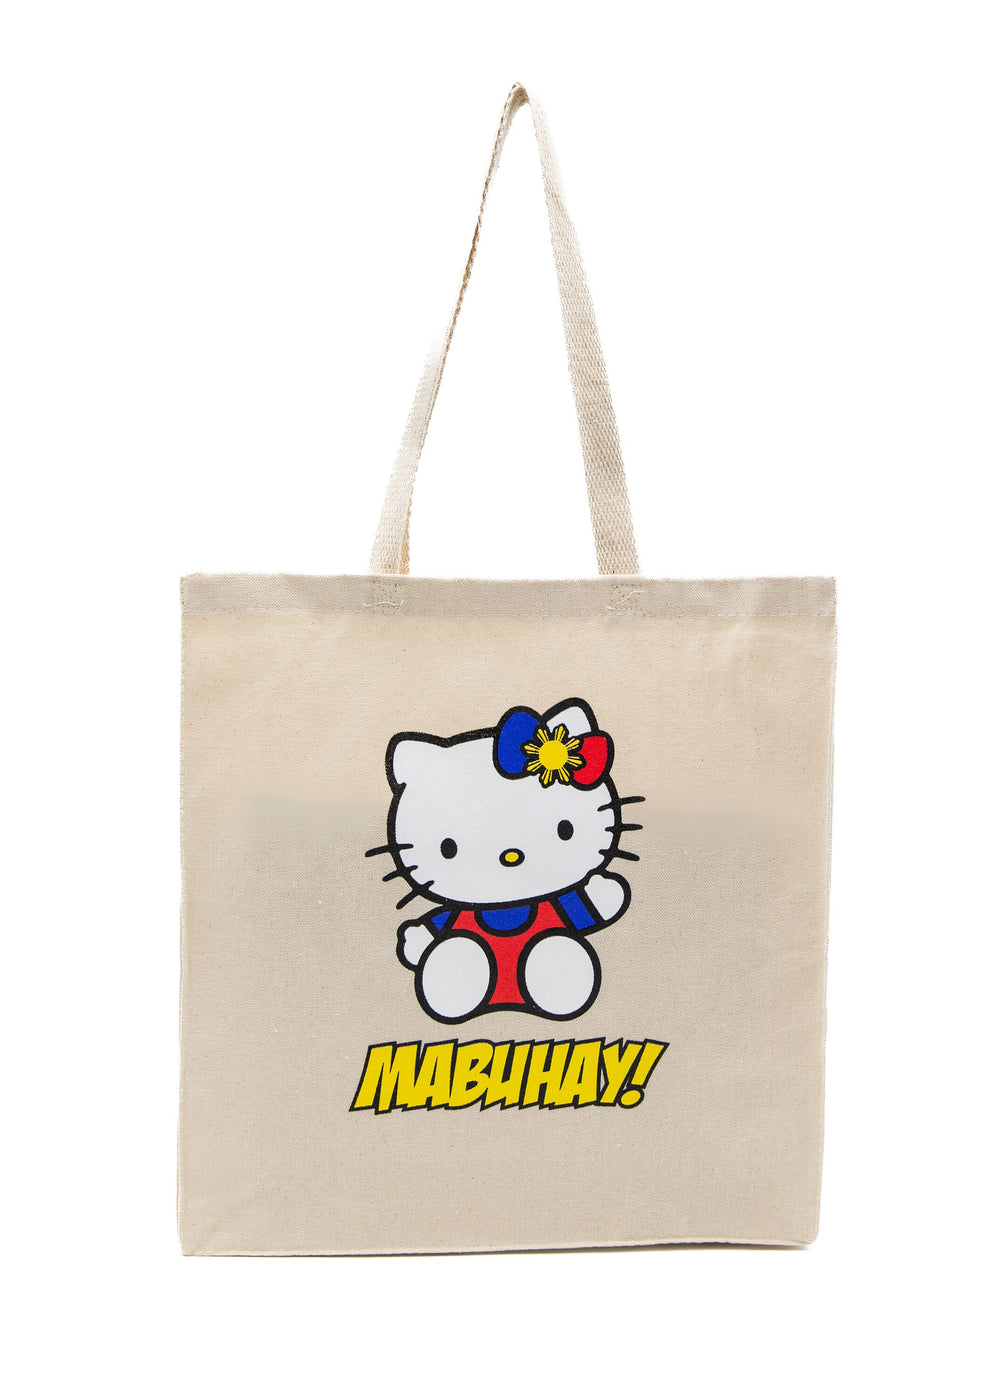 Mabuhay Hello Kitty Tote Bag, Filipino Tote Bags, Filipina, Shopping Bag, 14x15 Tote Bag, Natural